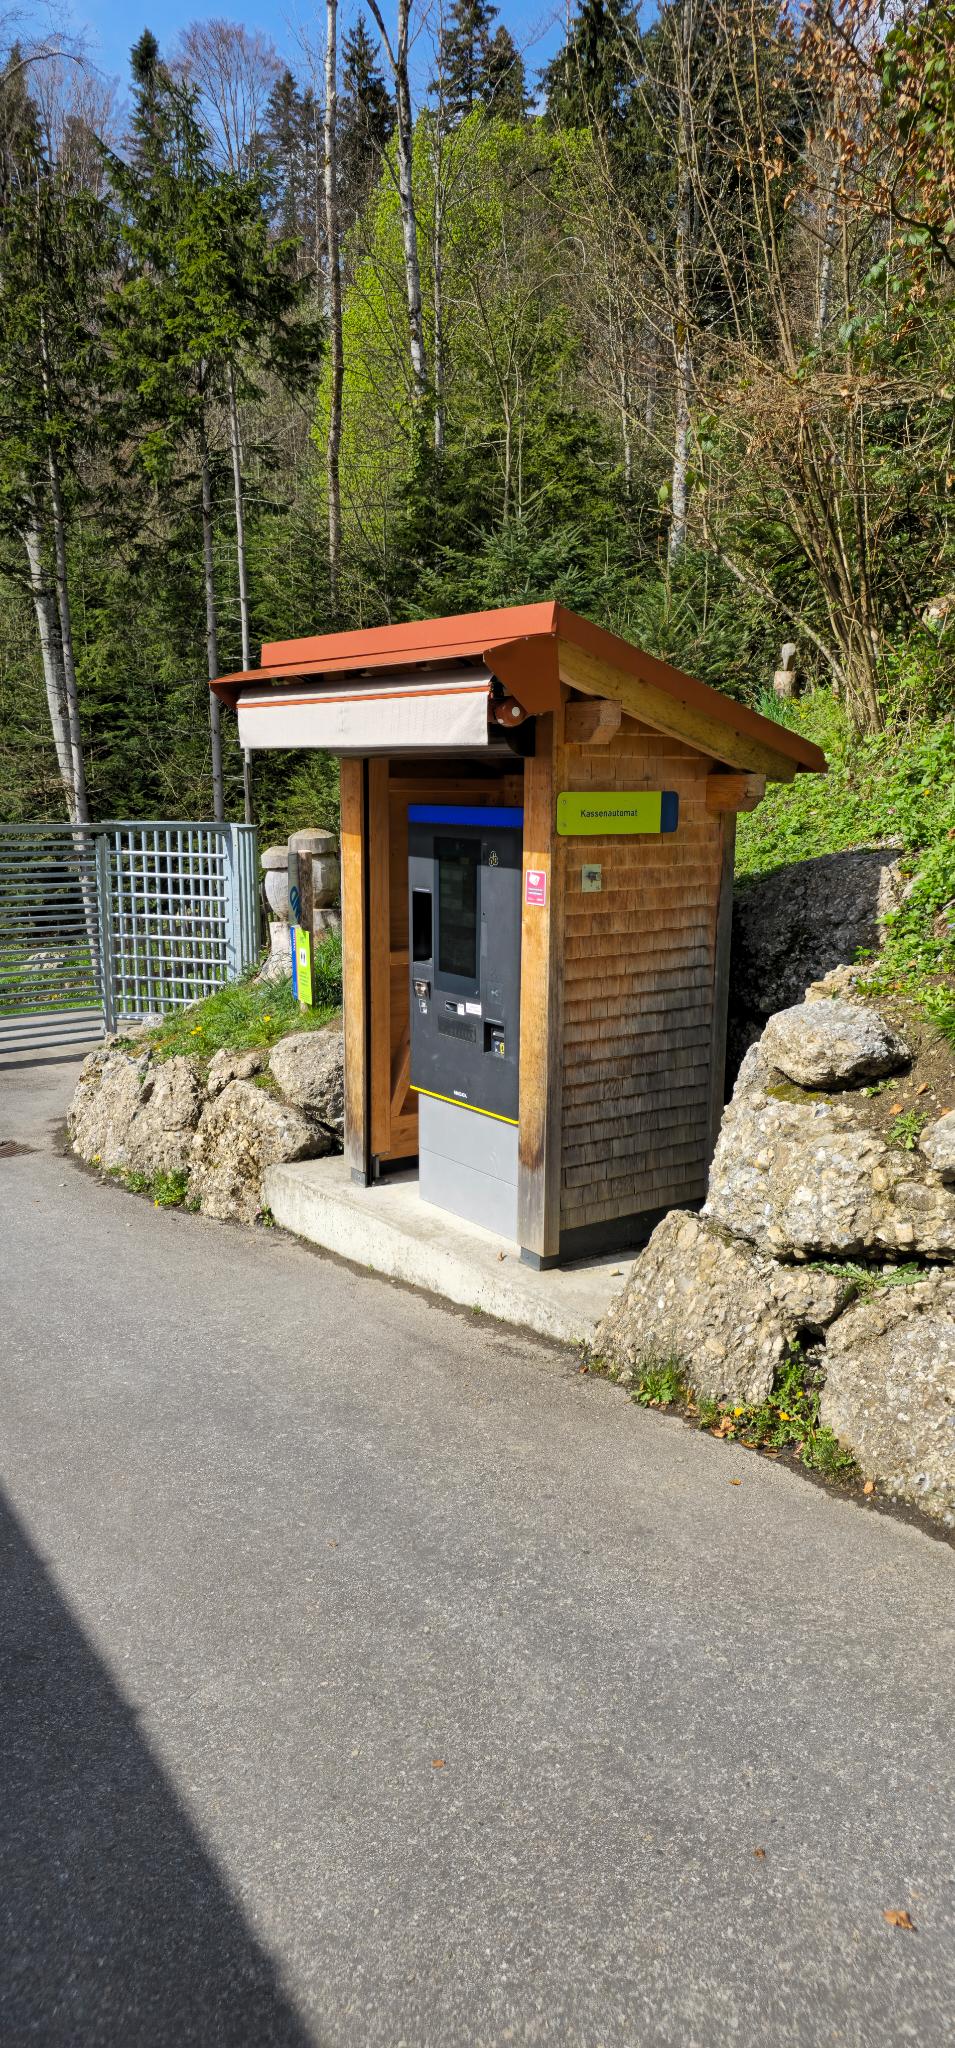 Kassenautomat für Eintritttickets